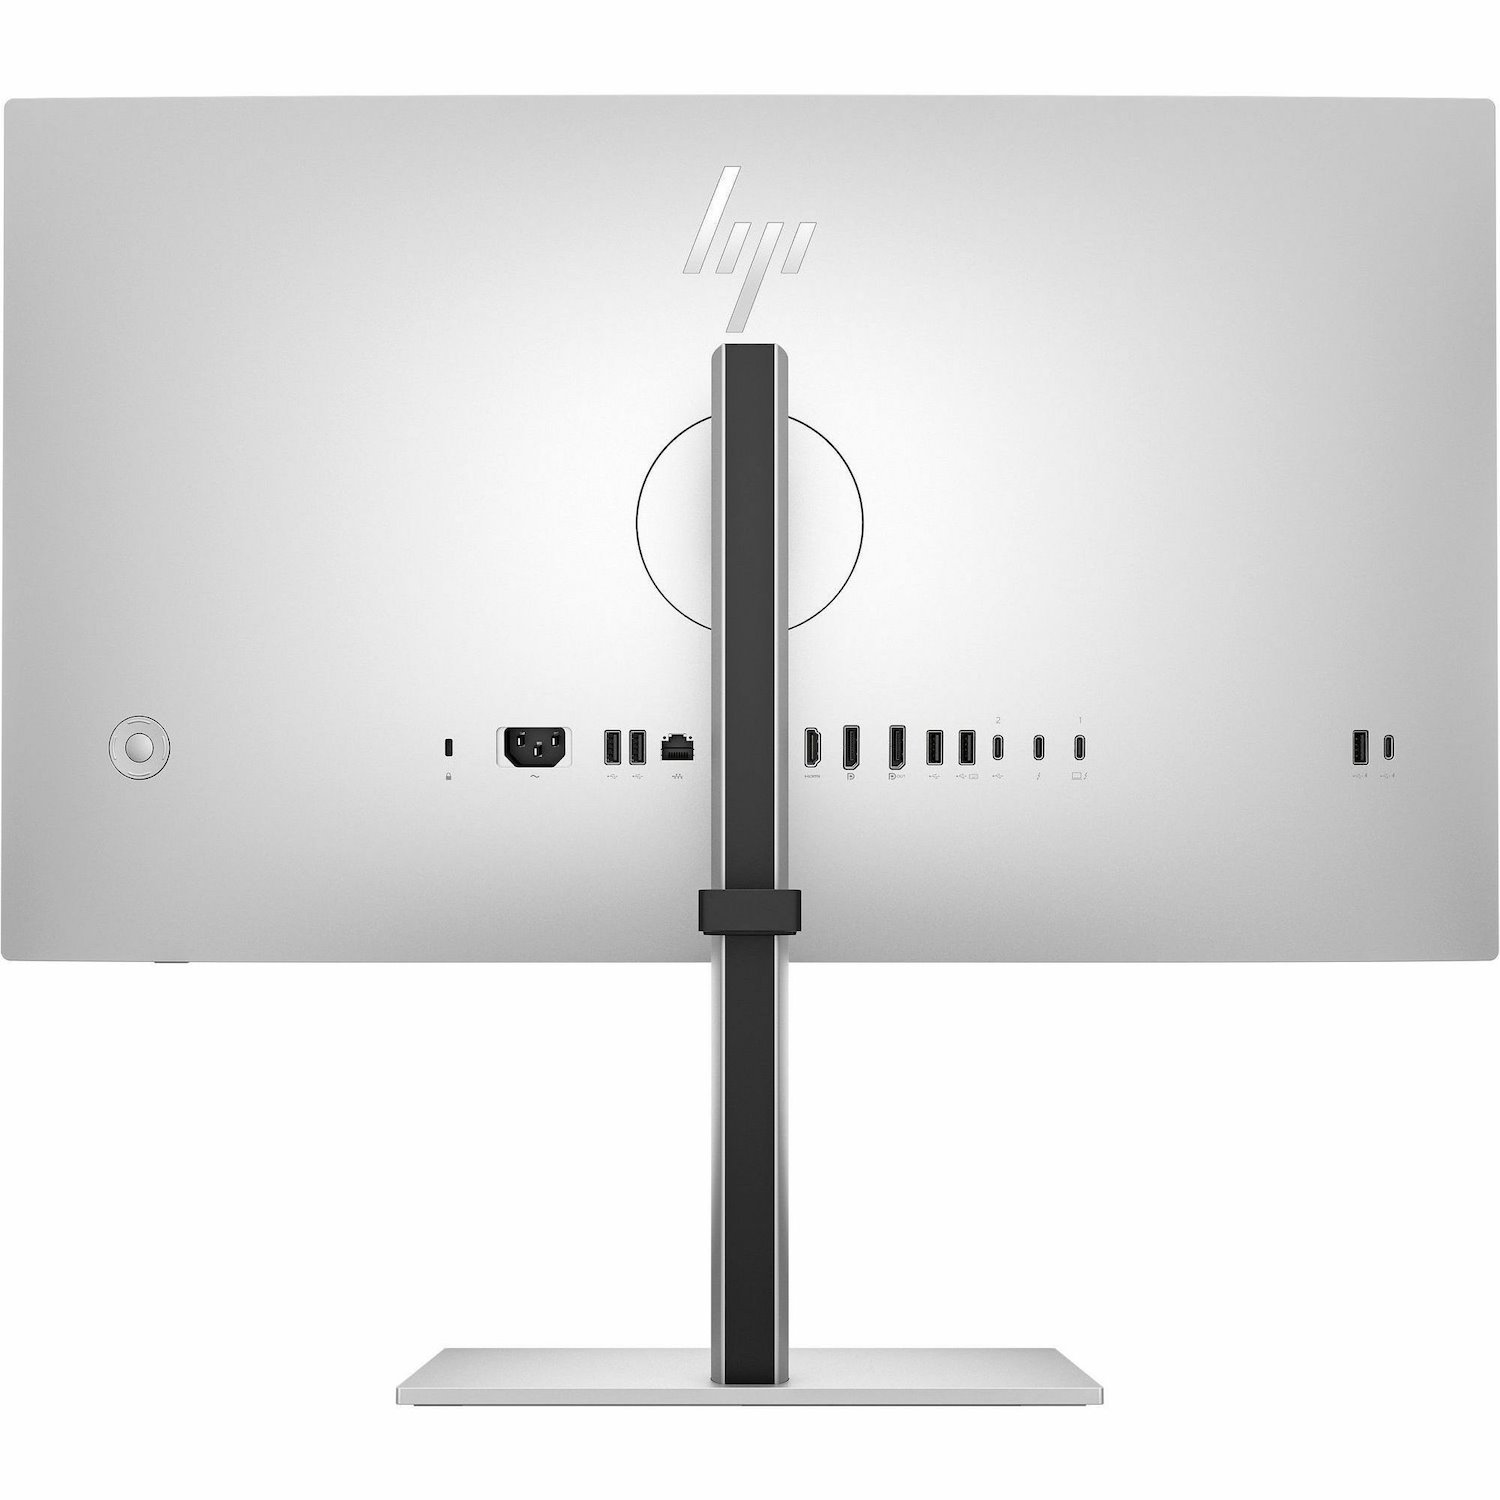 HP 727pk 27" Class 4K UHD LCD Monitor - 16:9 - Natural Silver